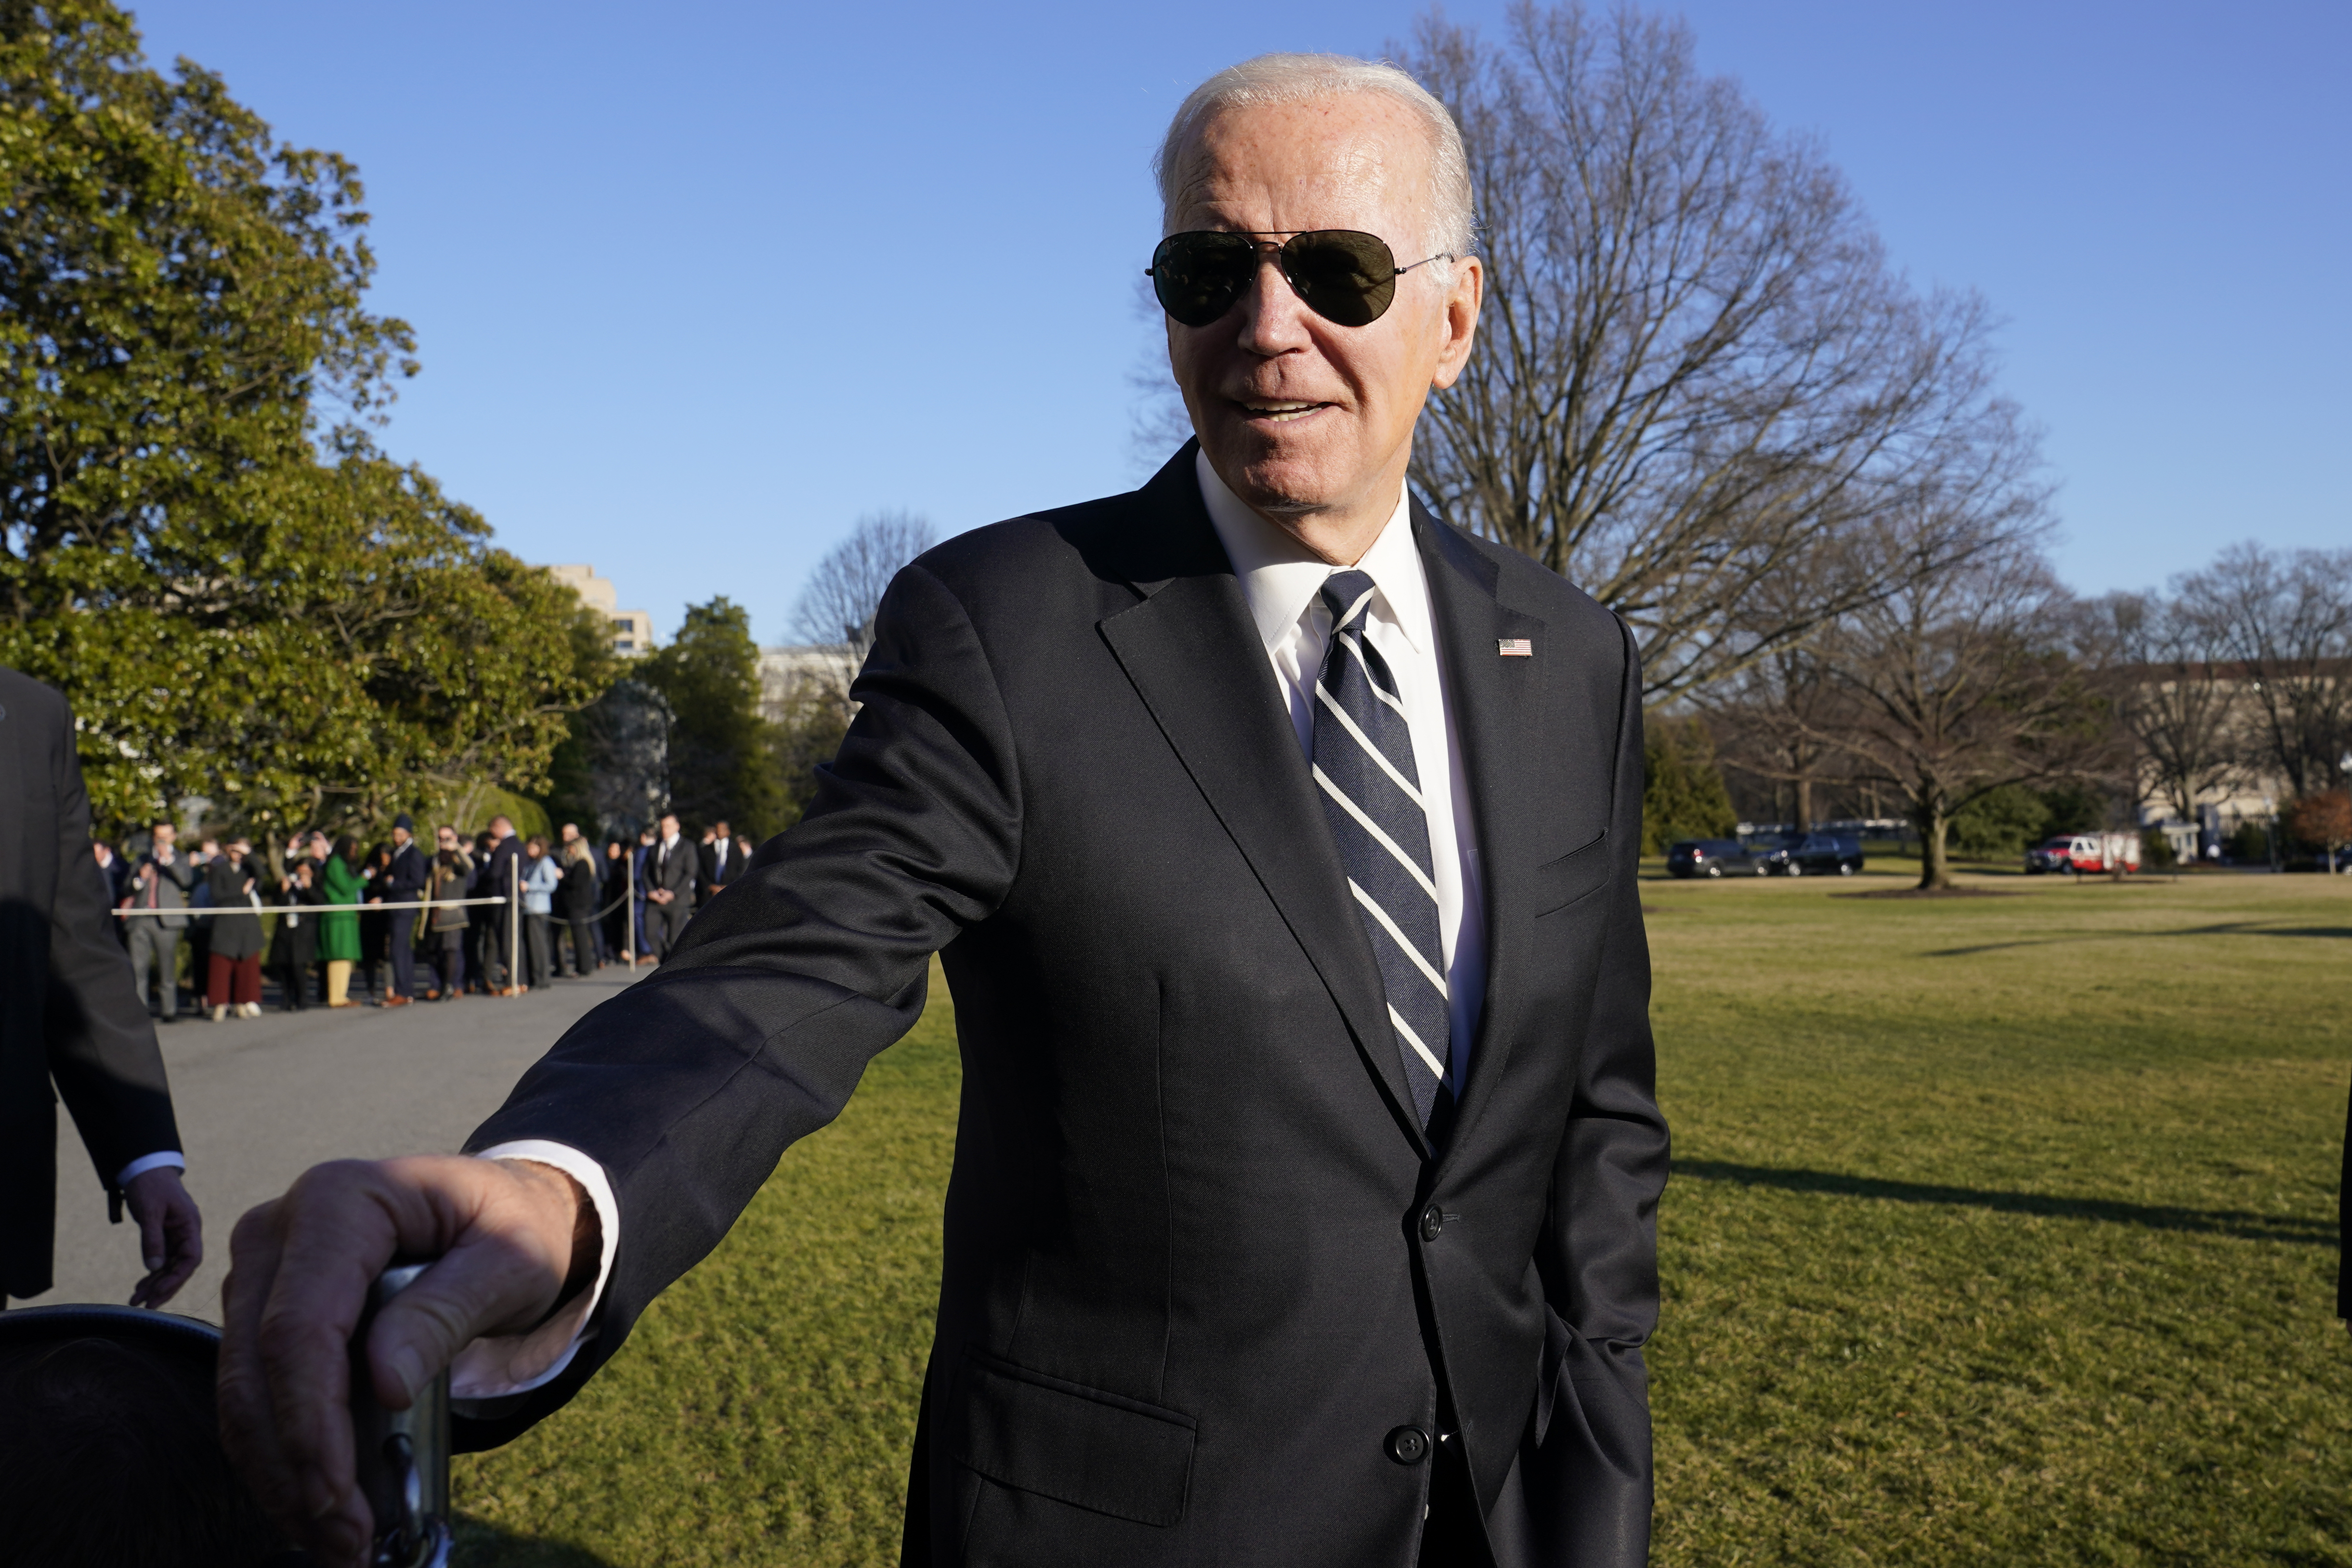 El presidente Joe Biden conversa con la prensa en el jardín sur de la Casa Blanca el lunes 30 de enero de 2023, en Washington, tras regresar de un evento en Baltimore sobre infrastructura. (AP Foto/Susan Walsh)